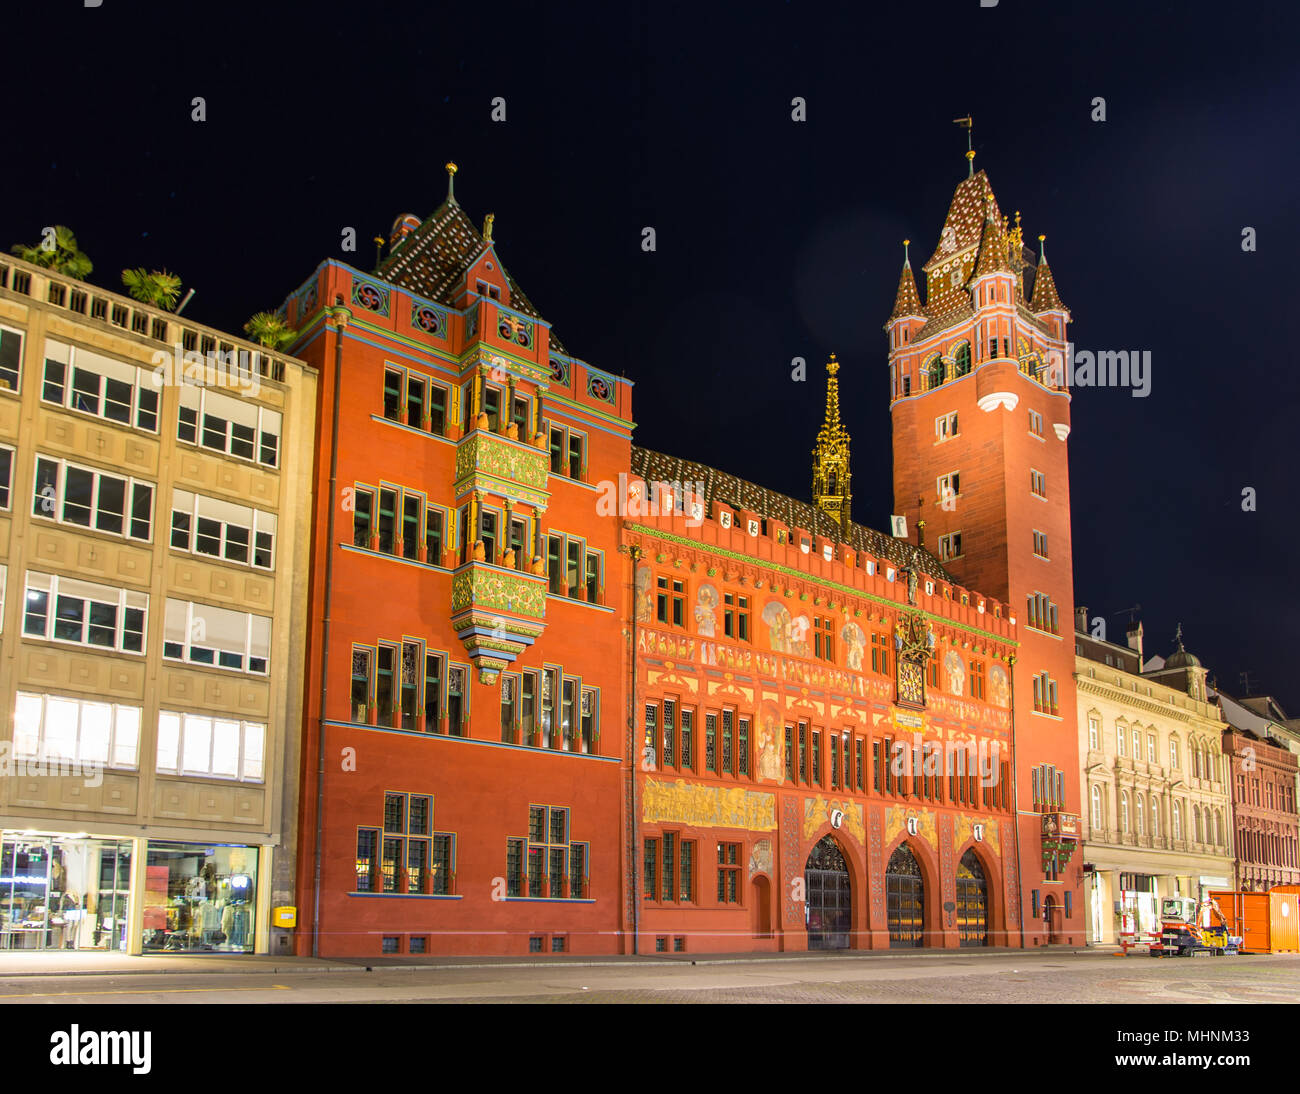 Hôtel de ville de Bâle (Rathaus) la nuit - Suisse Banque D'Images